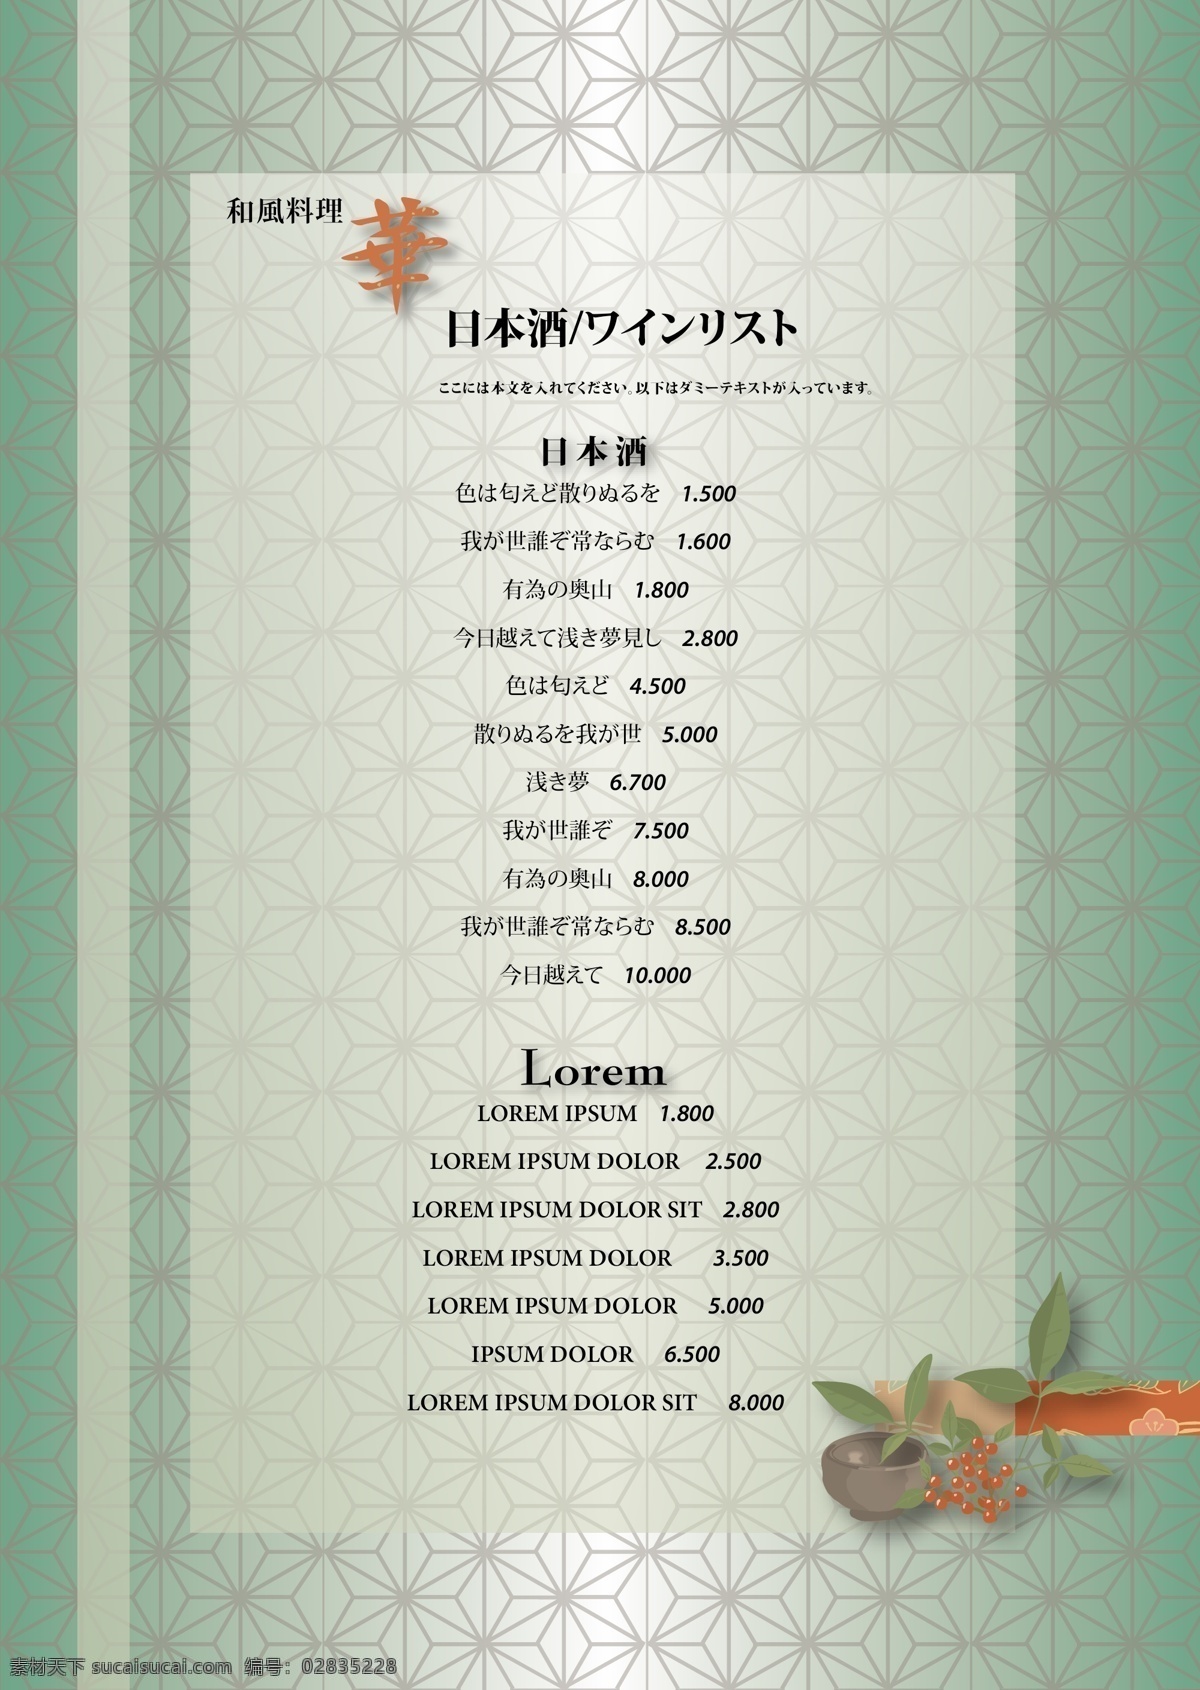 日式 餐厅 酒水单 矢量图库 矢量 模板下载 日式模板旅游